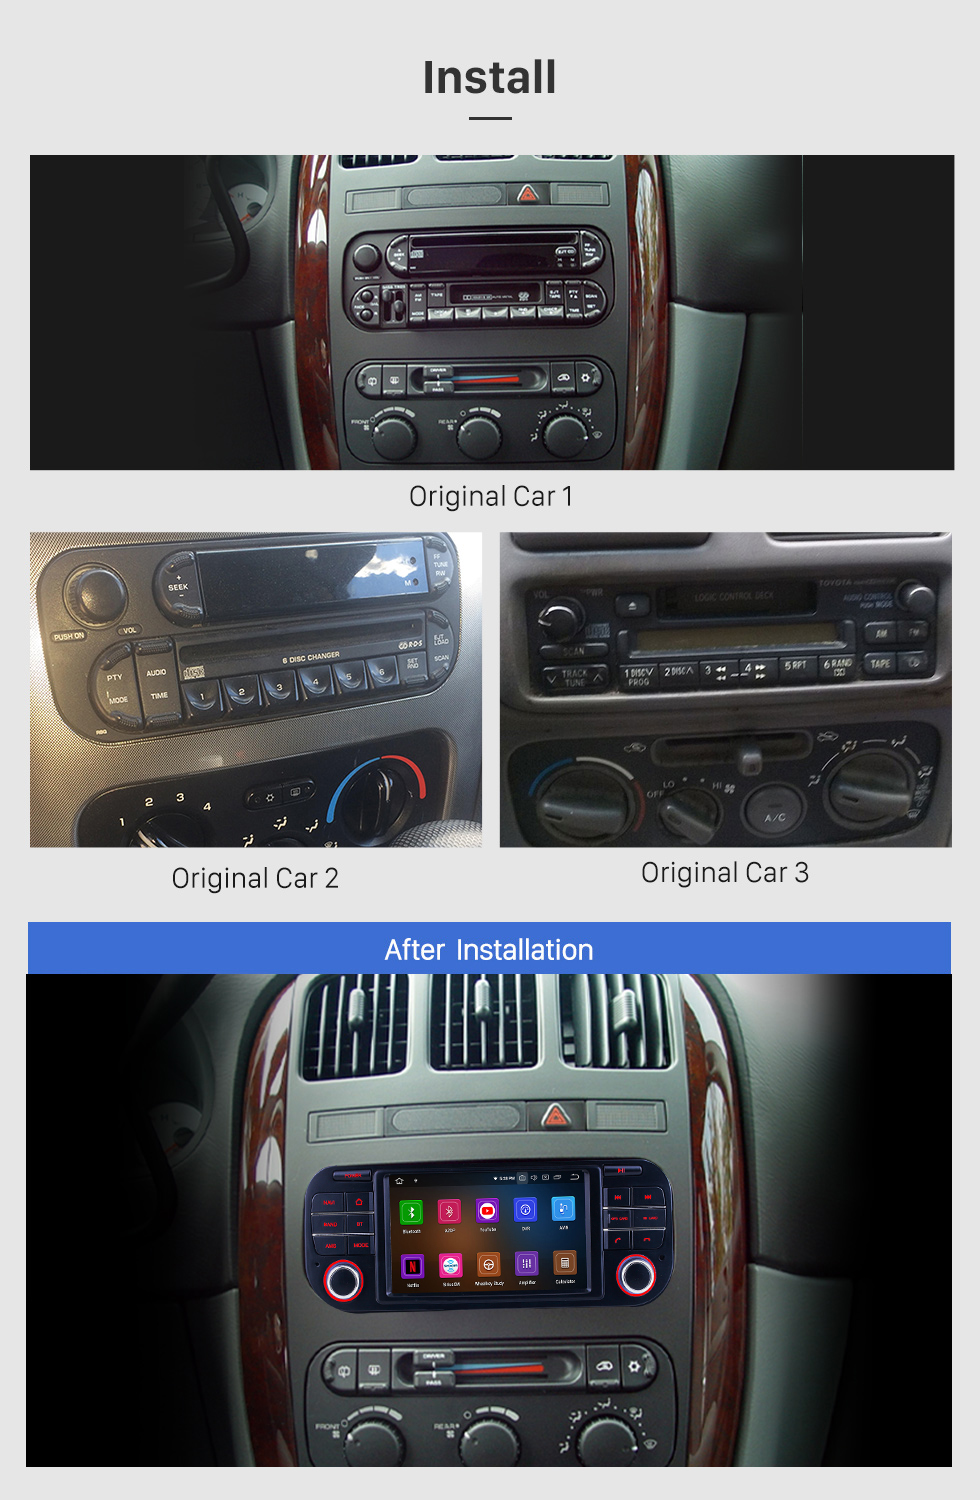 Seicane OEM Reproductor DVD Radio sistema de navegación GPS para 2002-2007 Dodge Intrepid Magnum Neon con Bluetooth Pantalla táctil TPMS DVR OBD Vínculo espejo cámara de reserva TV Vídeo 3G WiFi